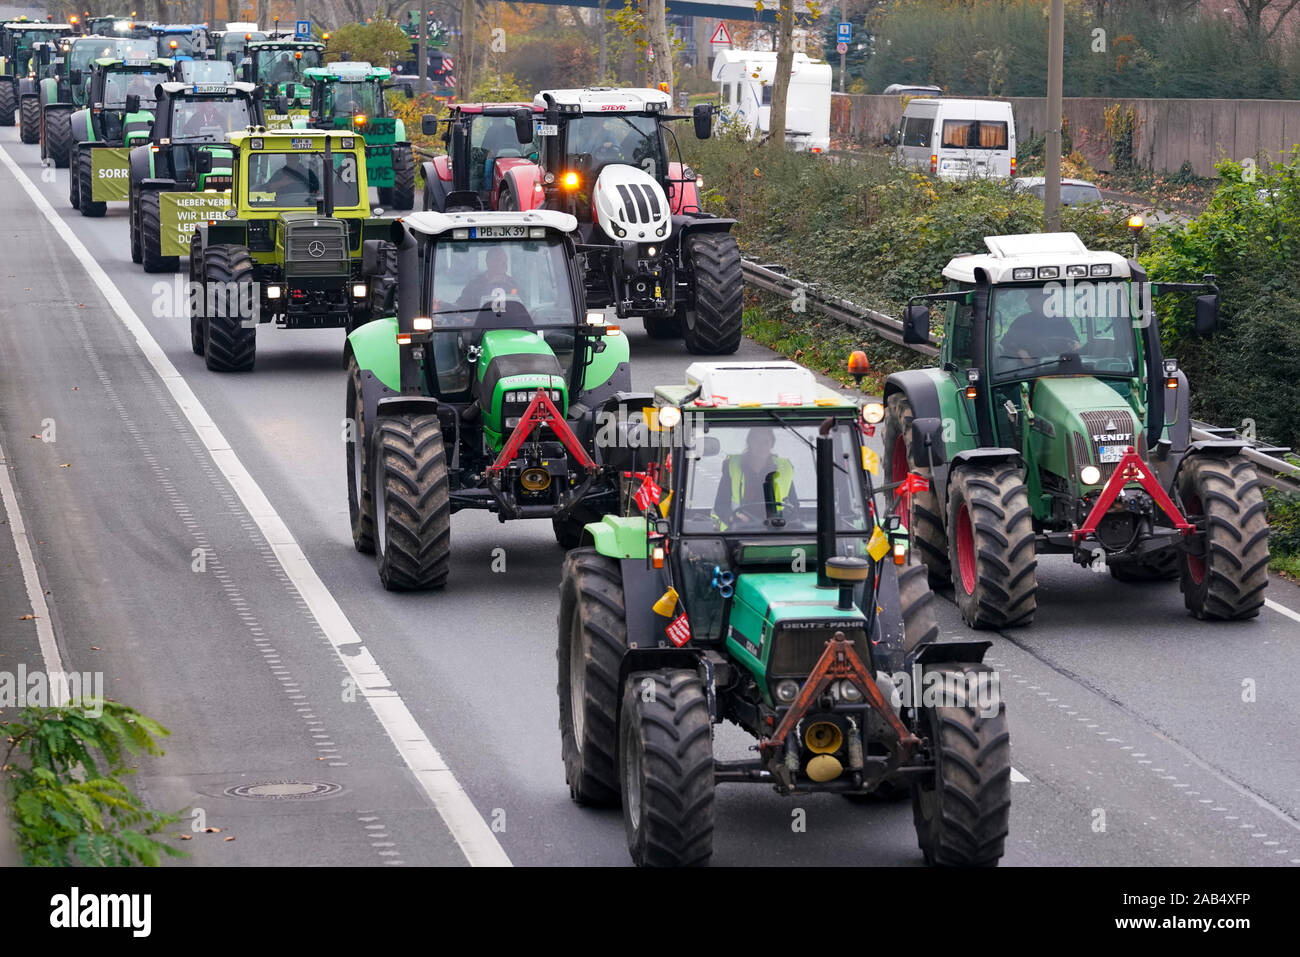 Dortmund, 25.11.2019: Landwirte Demonstration mit einem Traktor Konvoi  gegen die Agrarpolitik der Bundesregierung. Landwirte aus NRW mit ihren  Traktoren auf der Hauptstraße 1 in Dortmund auf dem Weg nach Berlin. - - -